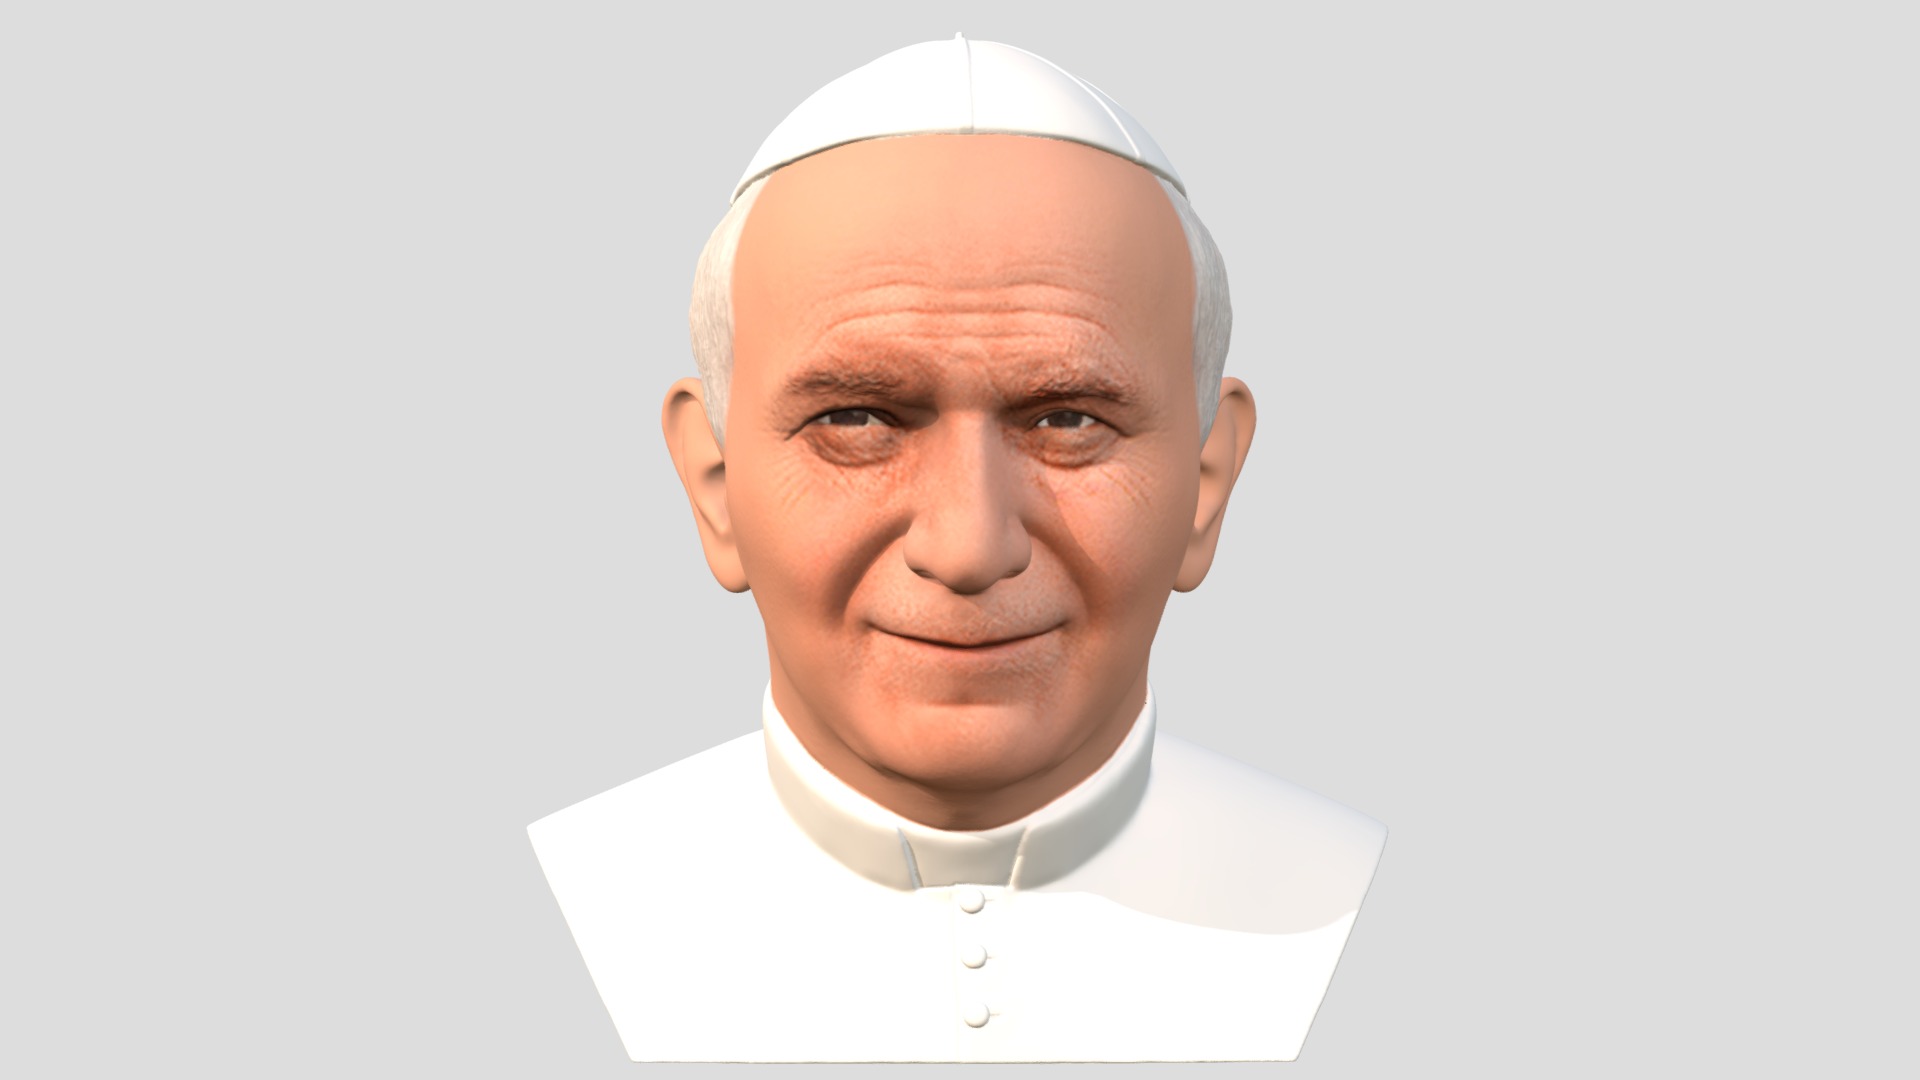 3D model John Paul II bust for full color 3D printing - This is a 3D model of the John Paul II bust for full color 3D printing. The 3D model is about a man wearing a white headdress.